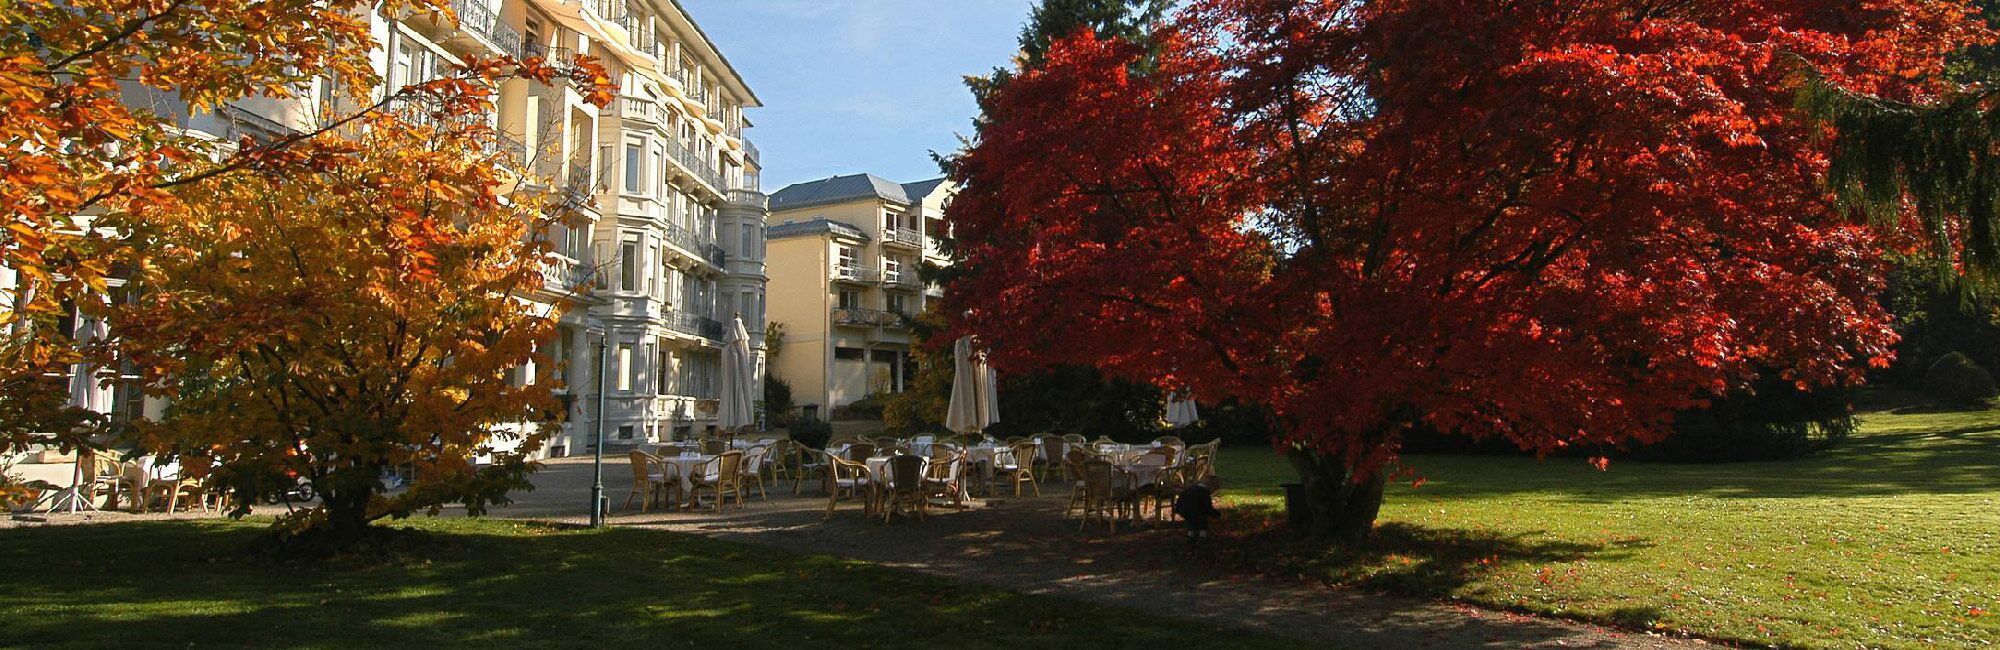 Kurpark-Residenz Bellevue Baden-Baden